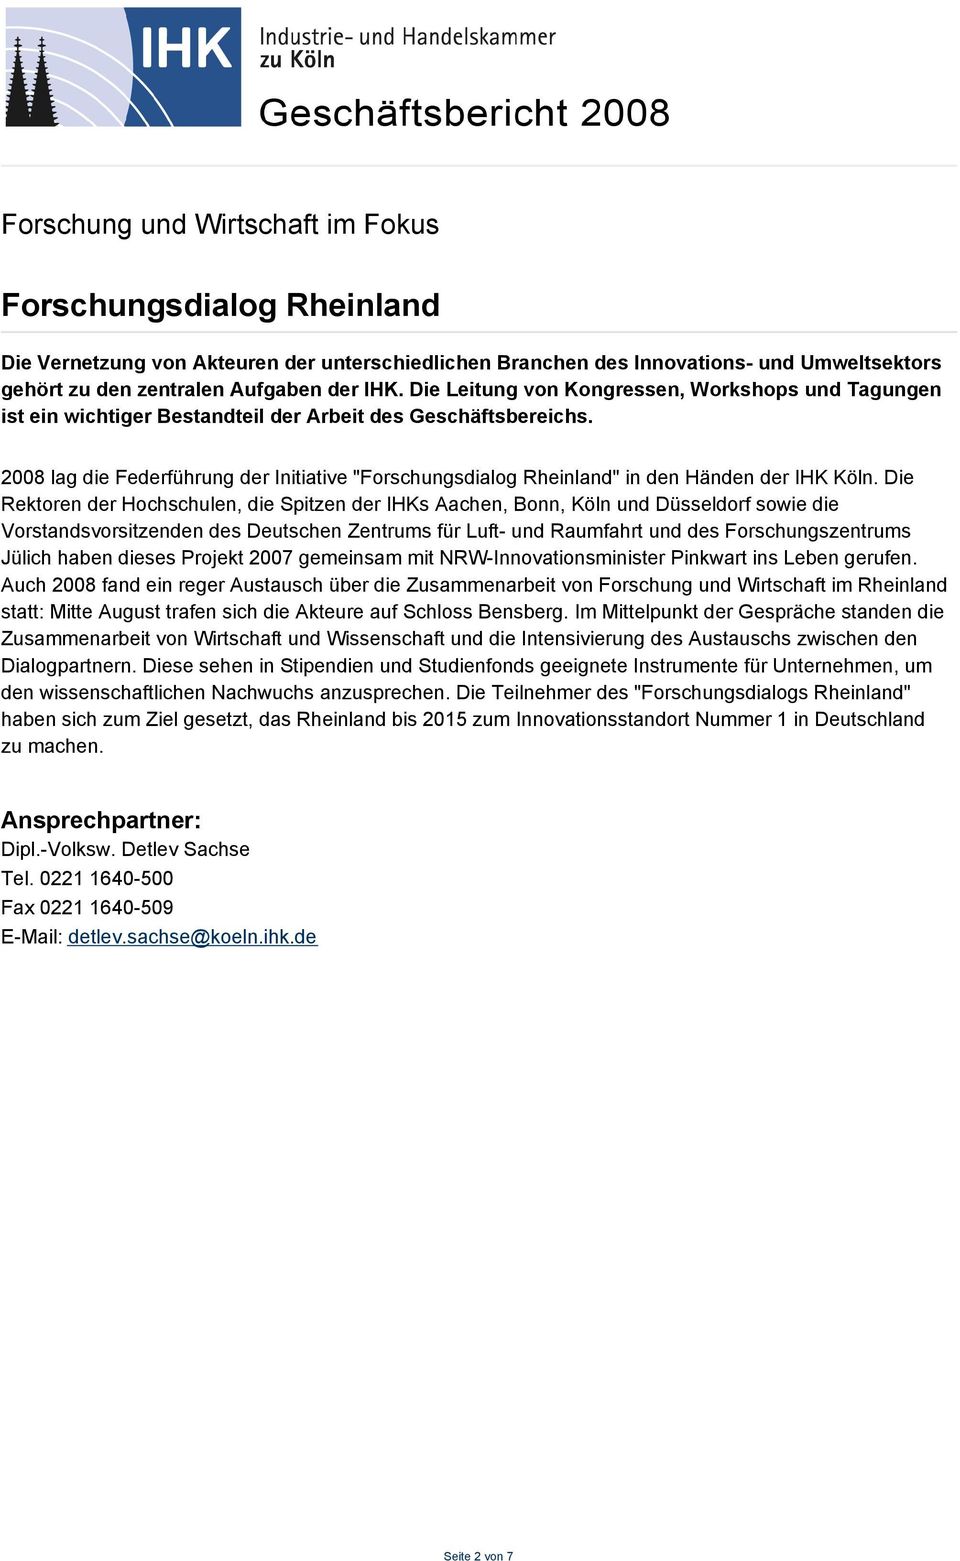 2008 lag die Federführung der Initiative "Forschungsdialog Rheinland" in den Händen der IHK Köln.